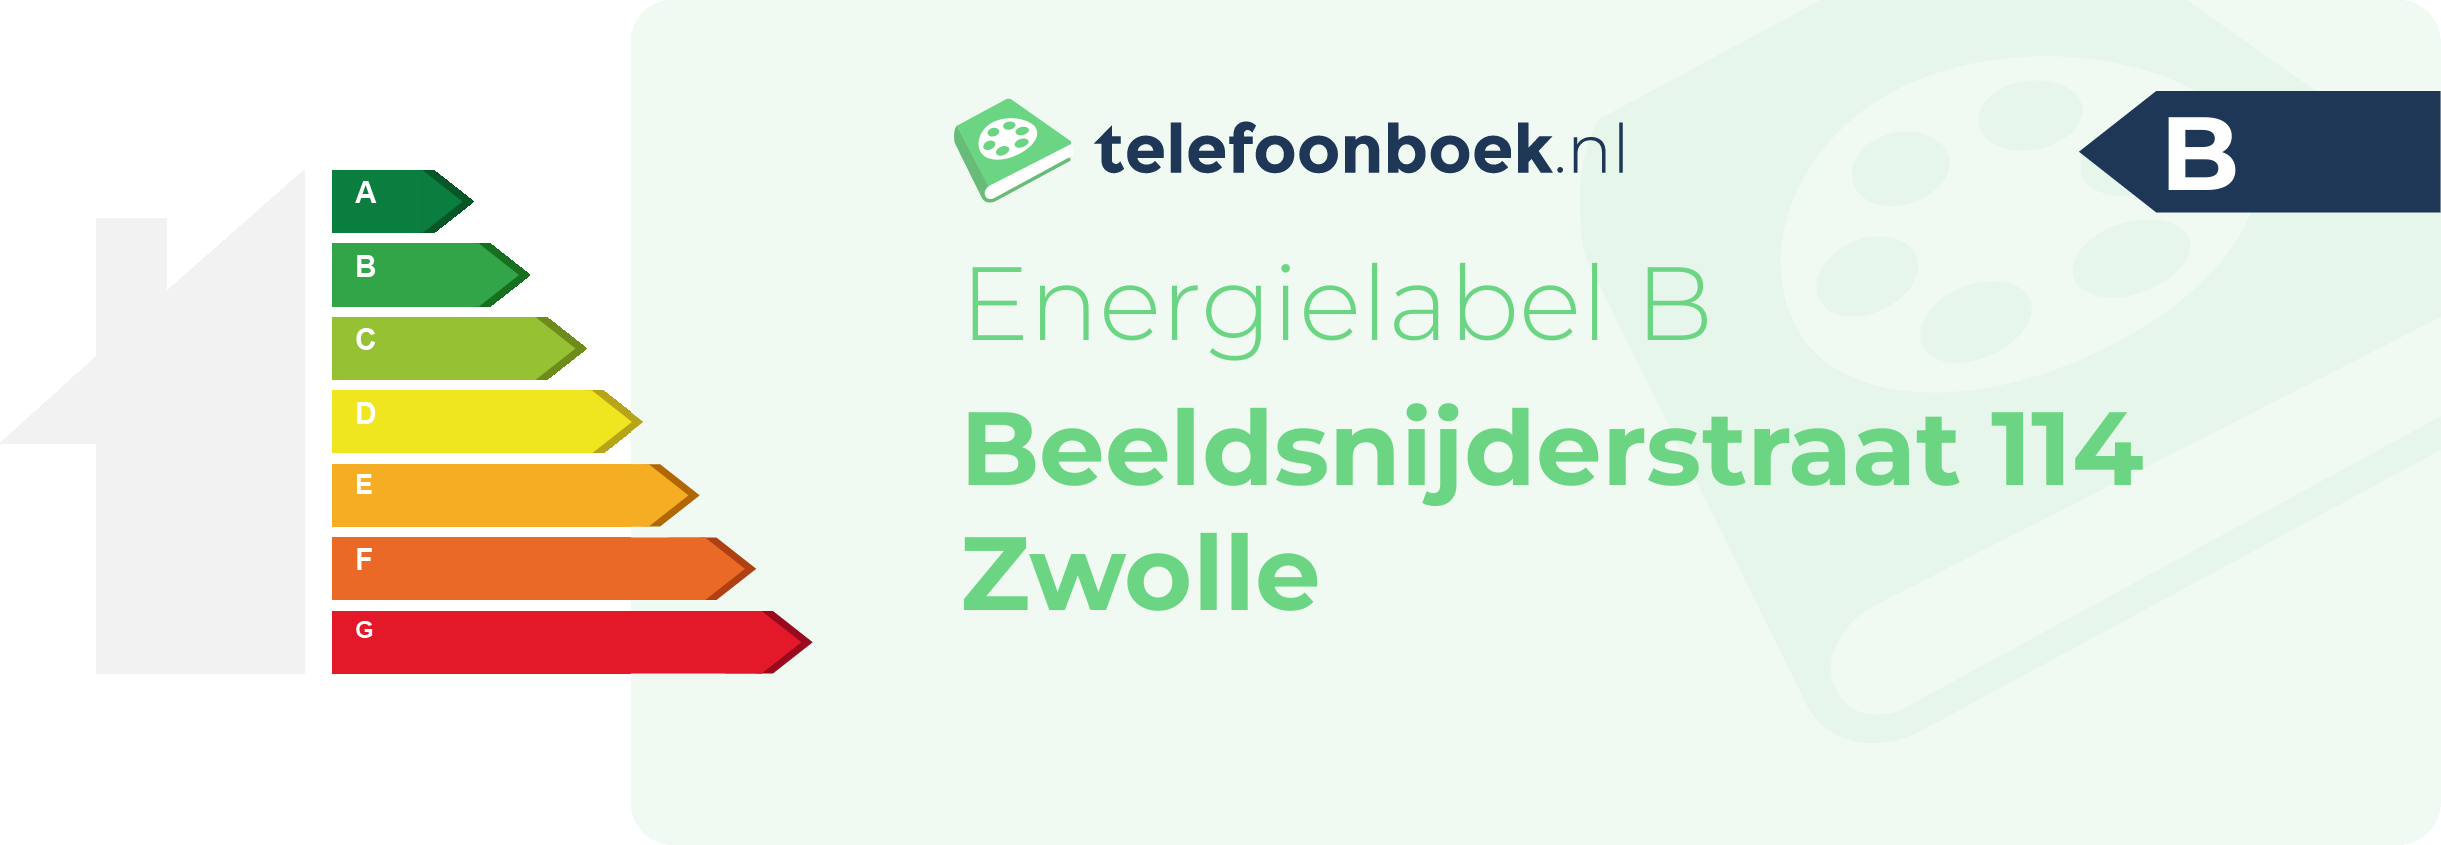 Energielabel Beeldsnijderstraat 114 Zwolle